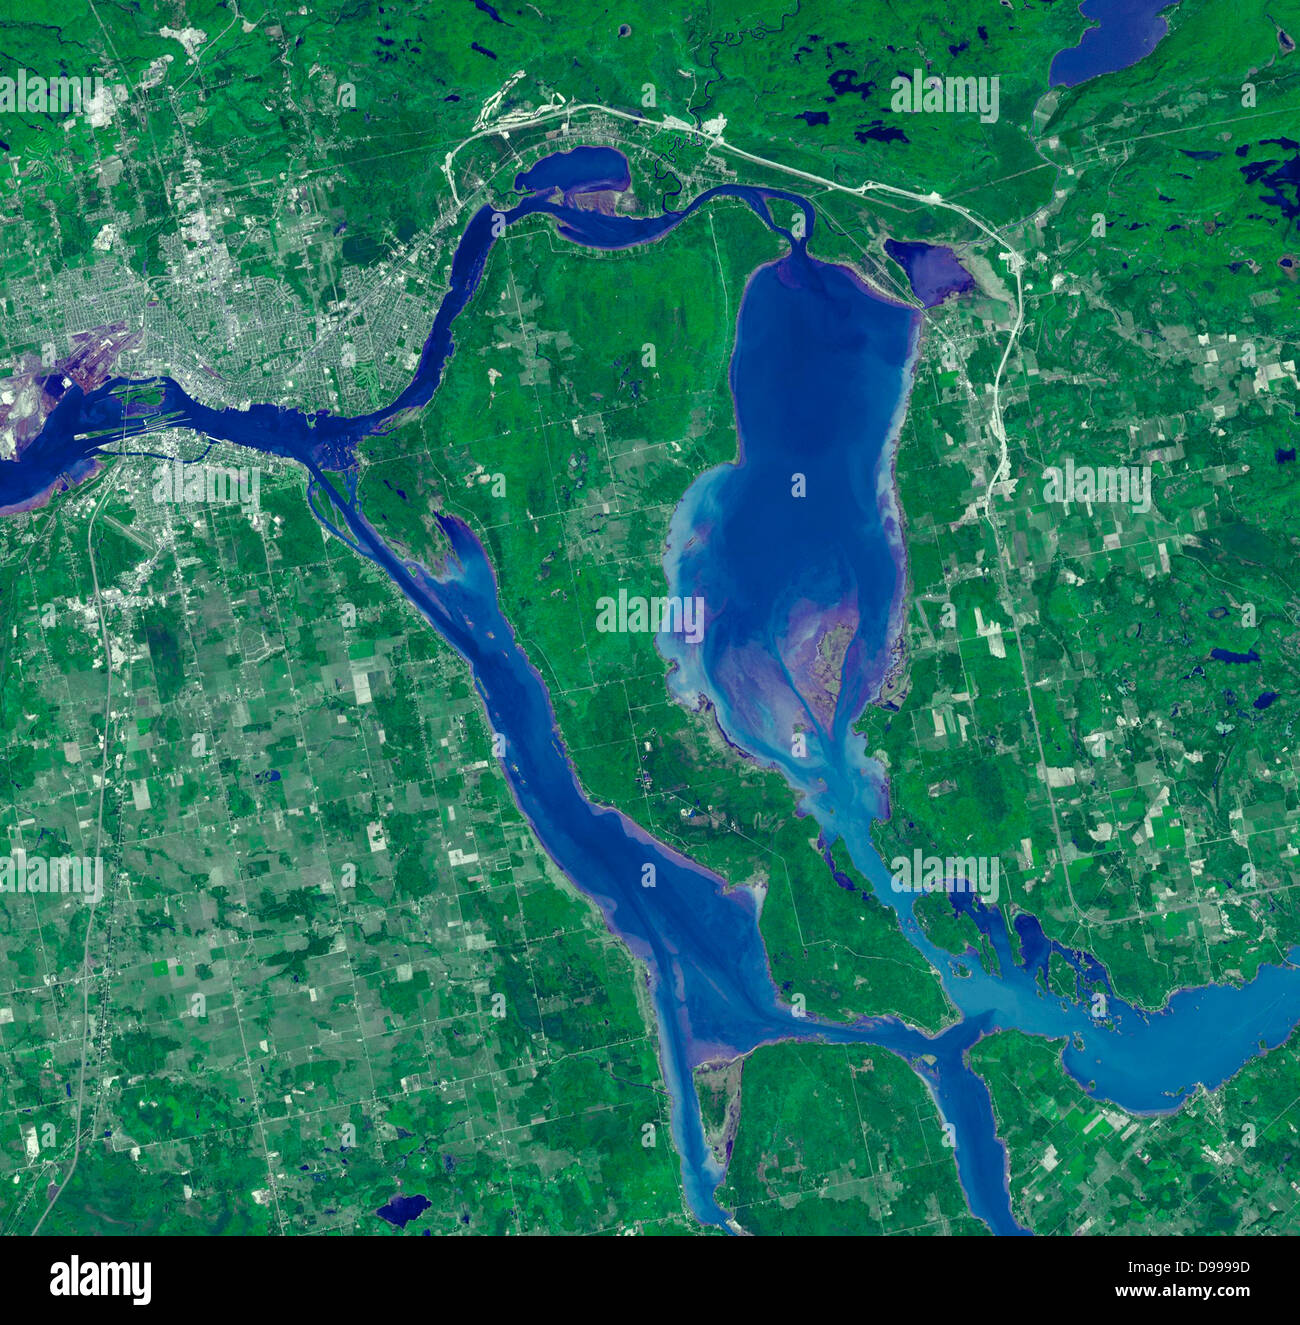 Sault Ste. Marie ist der Name zweier Städte am Saint Mary's River, zwischen Kanada und dem Bundesstaat Michigan in den Vereinigten Staaten. Satellitenbild. Stockfoto